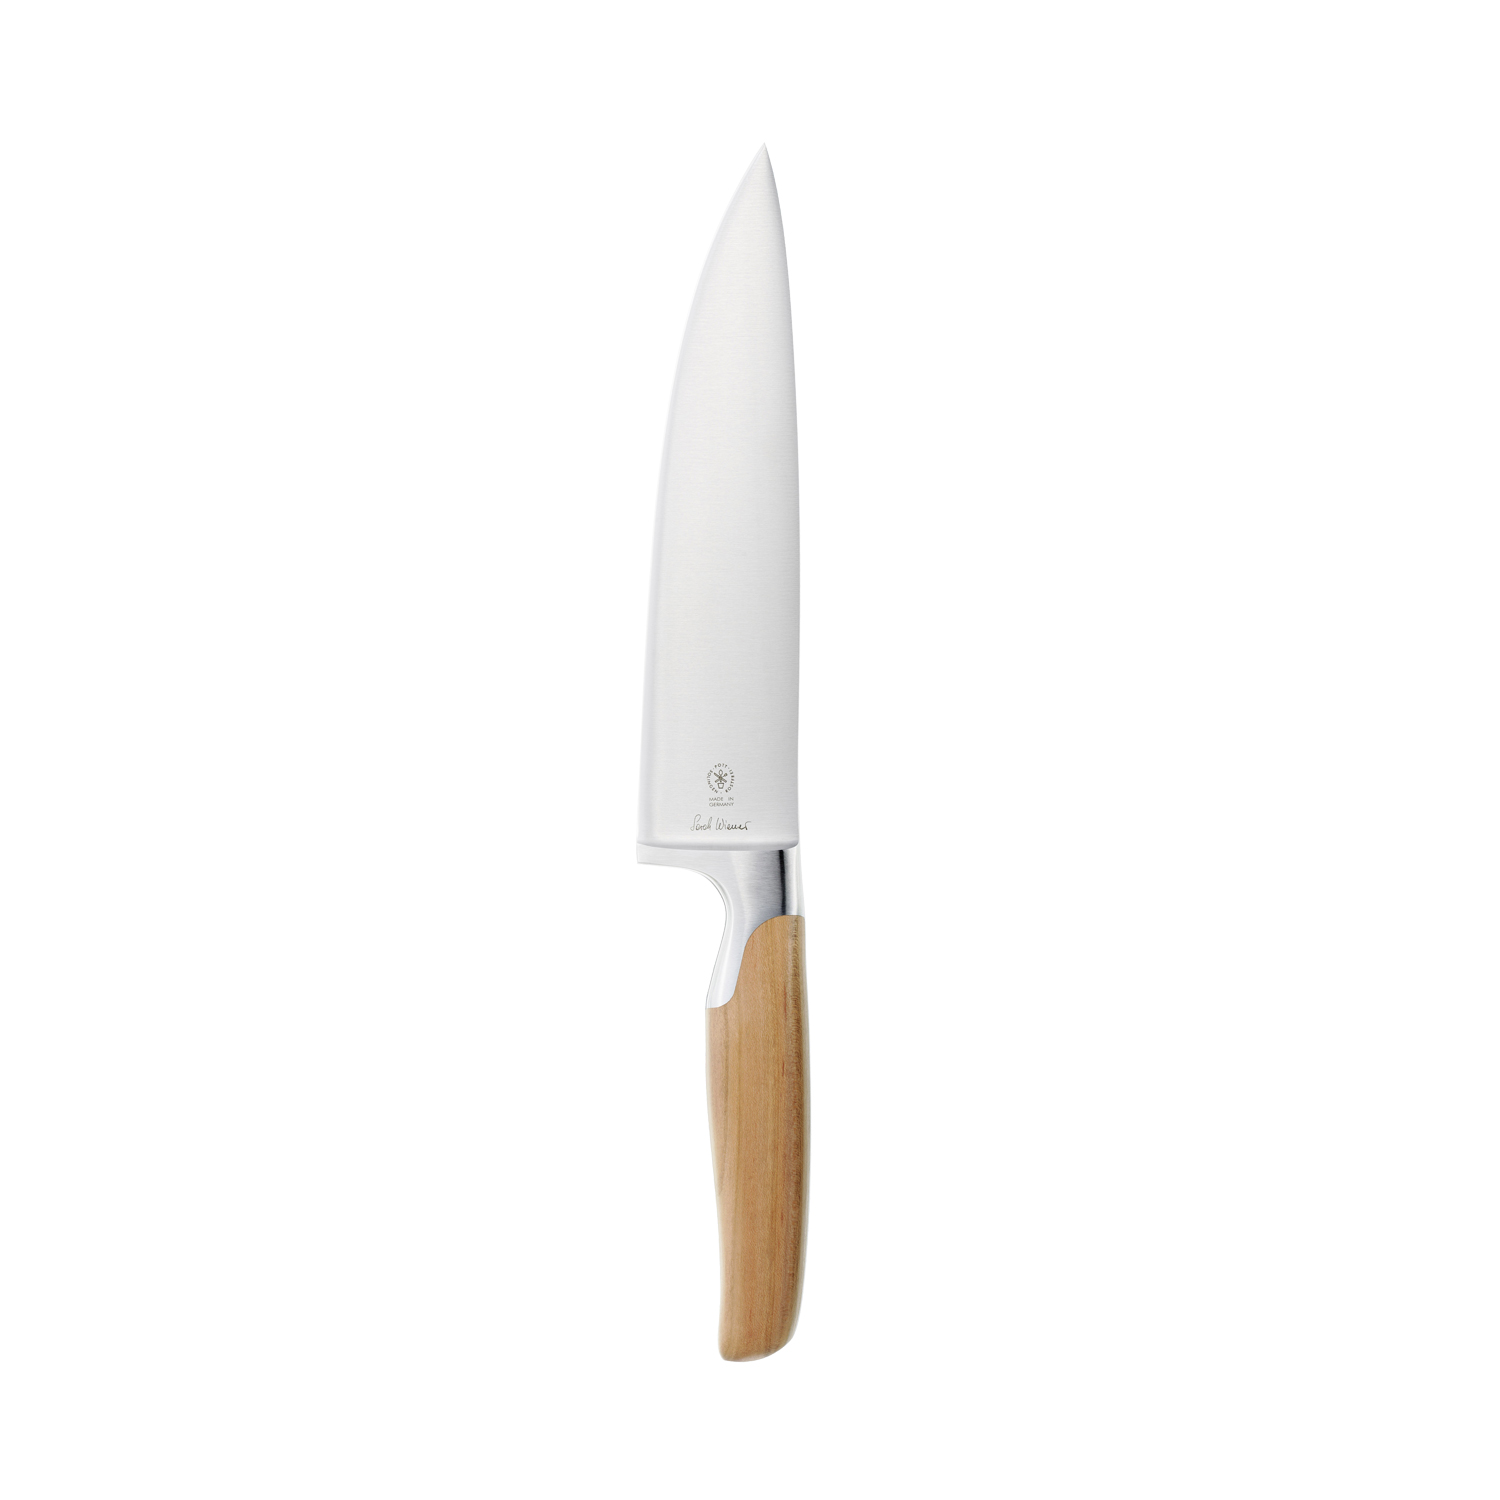 2810 143 Pott Sarah Wiener Messer Knives